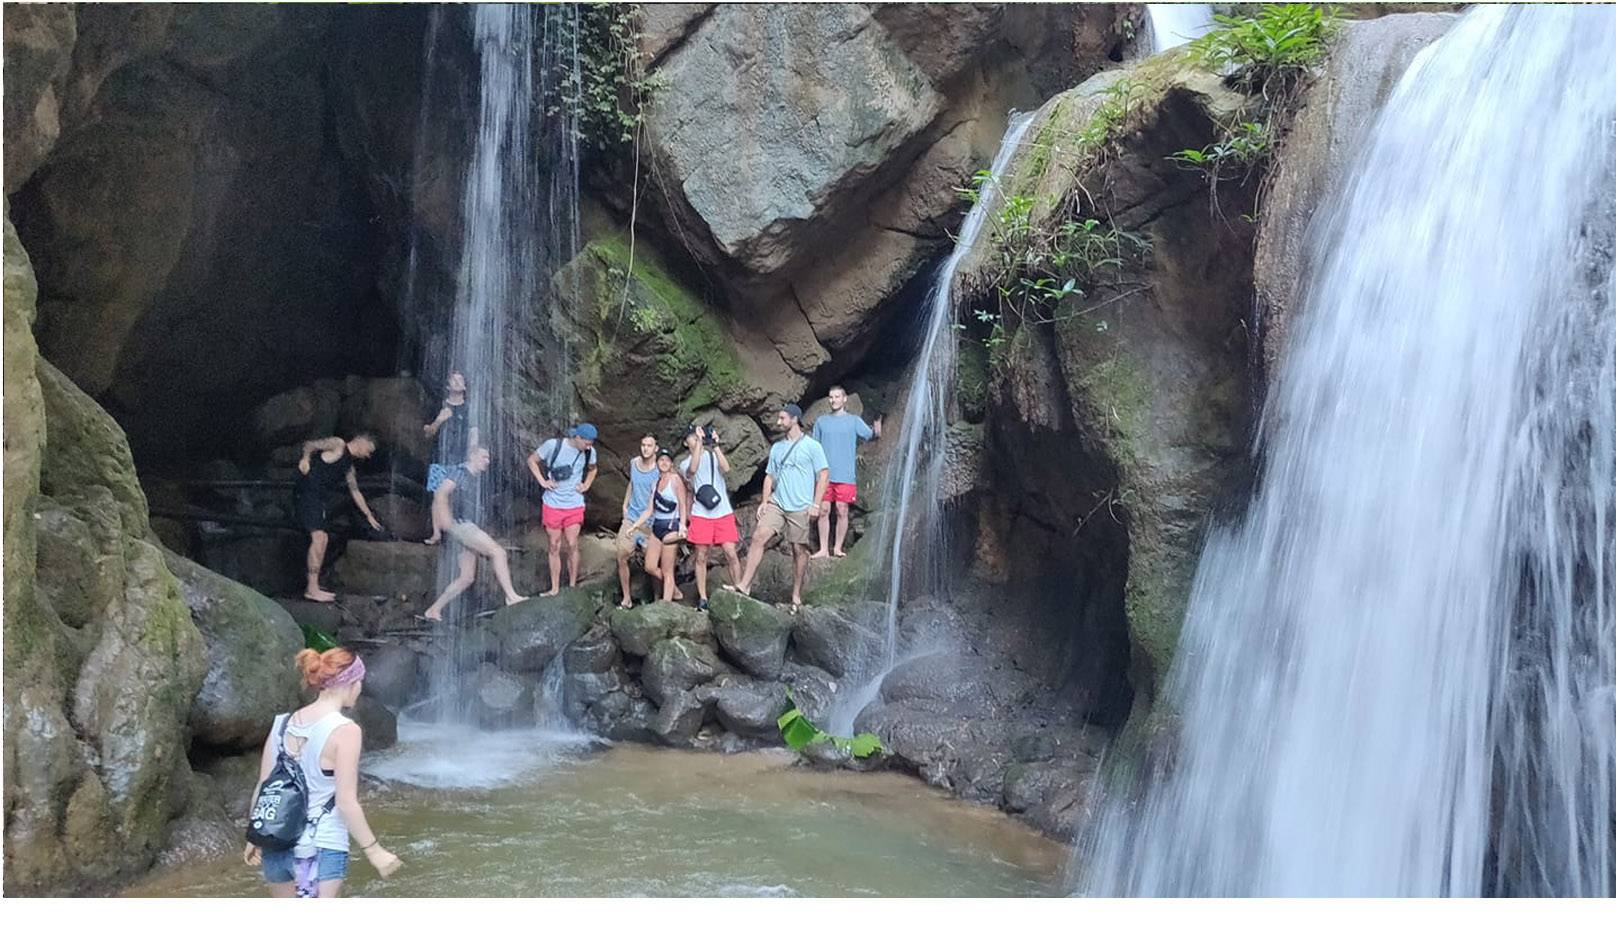 A big group, a rare sight at Hua Chang Waterfalls